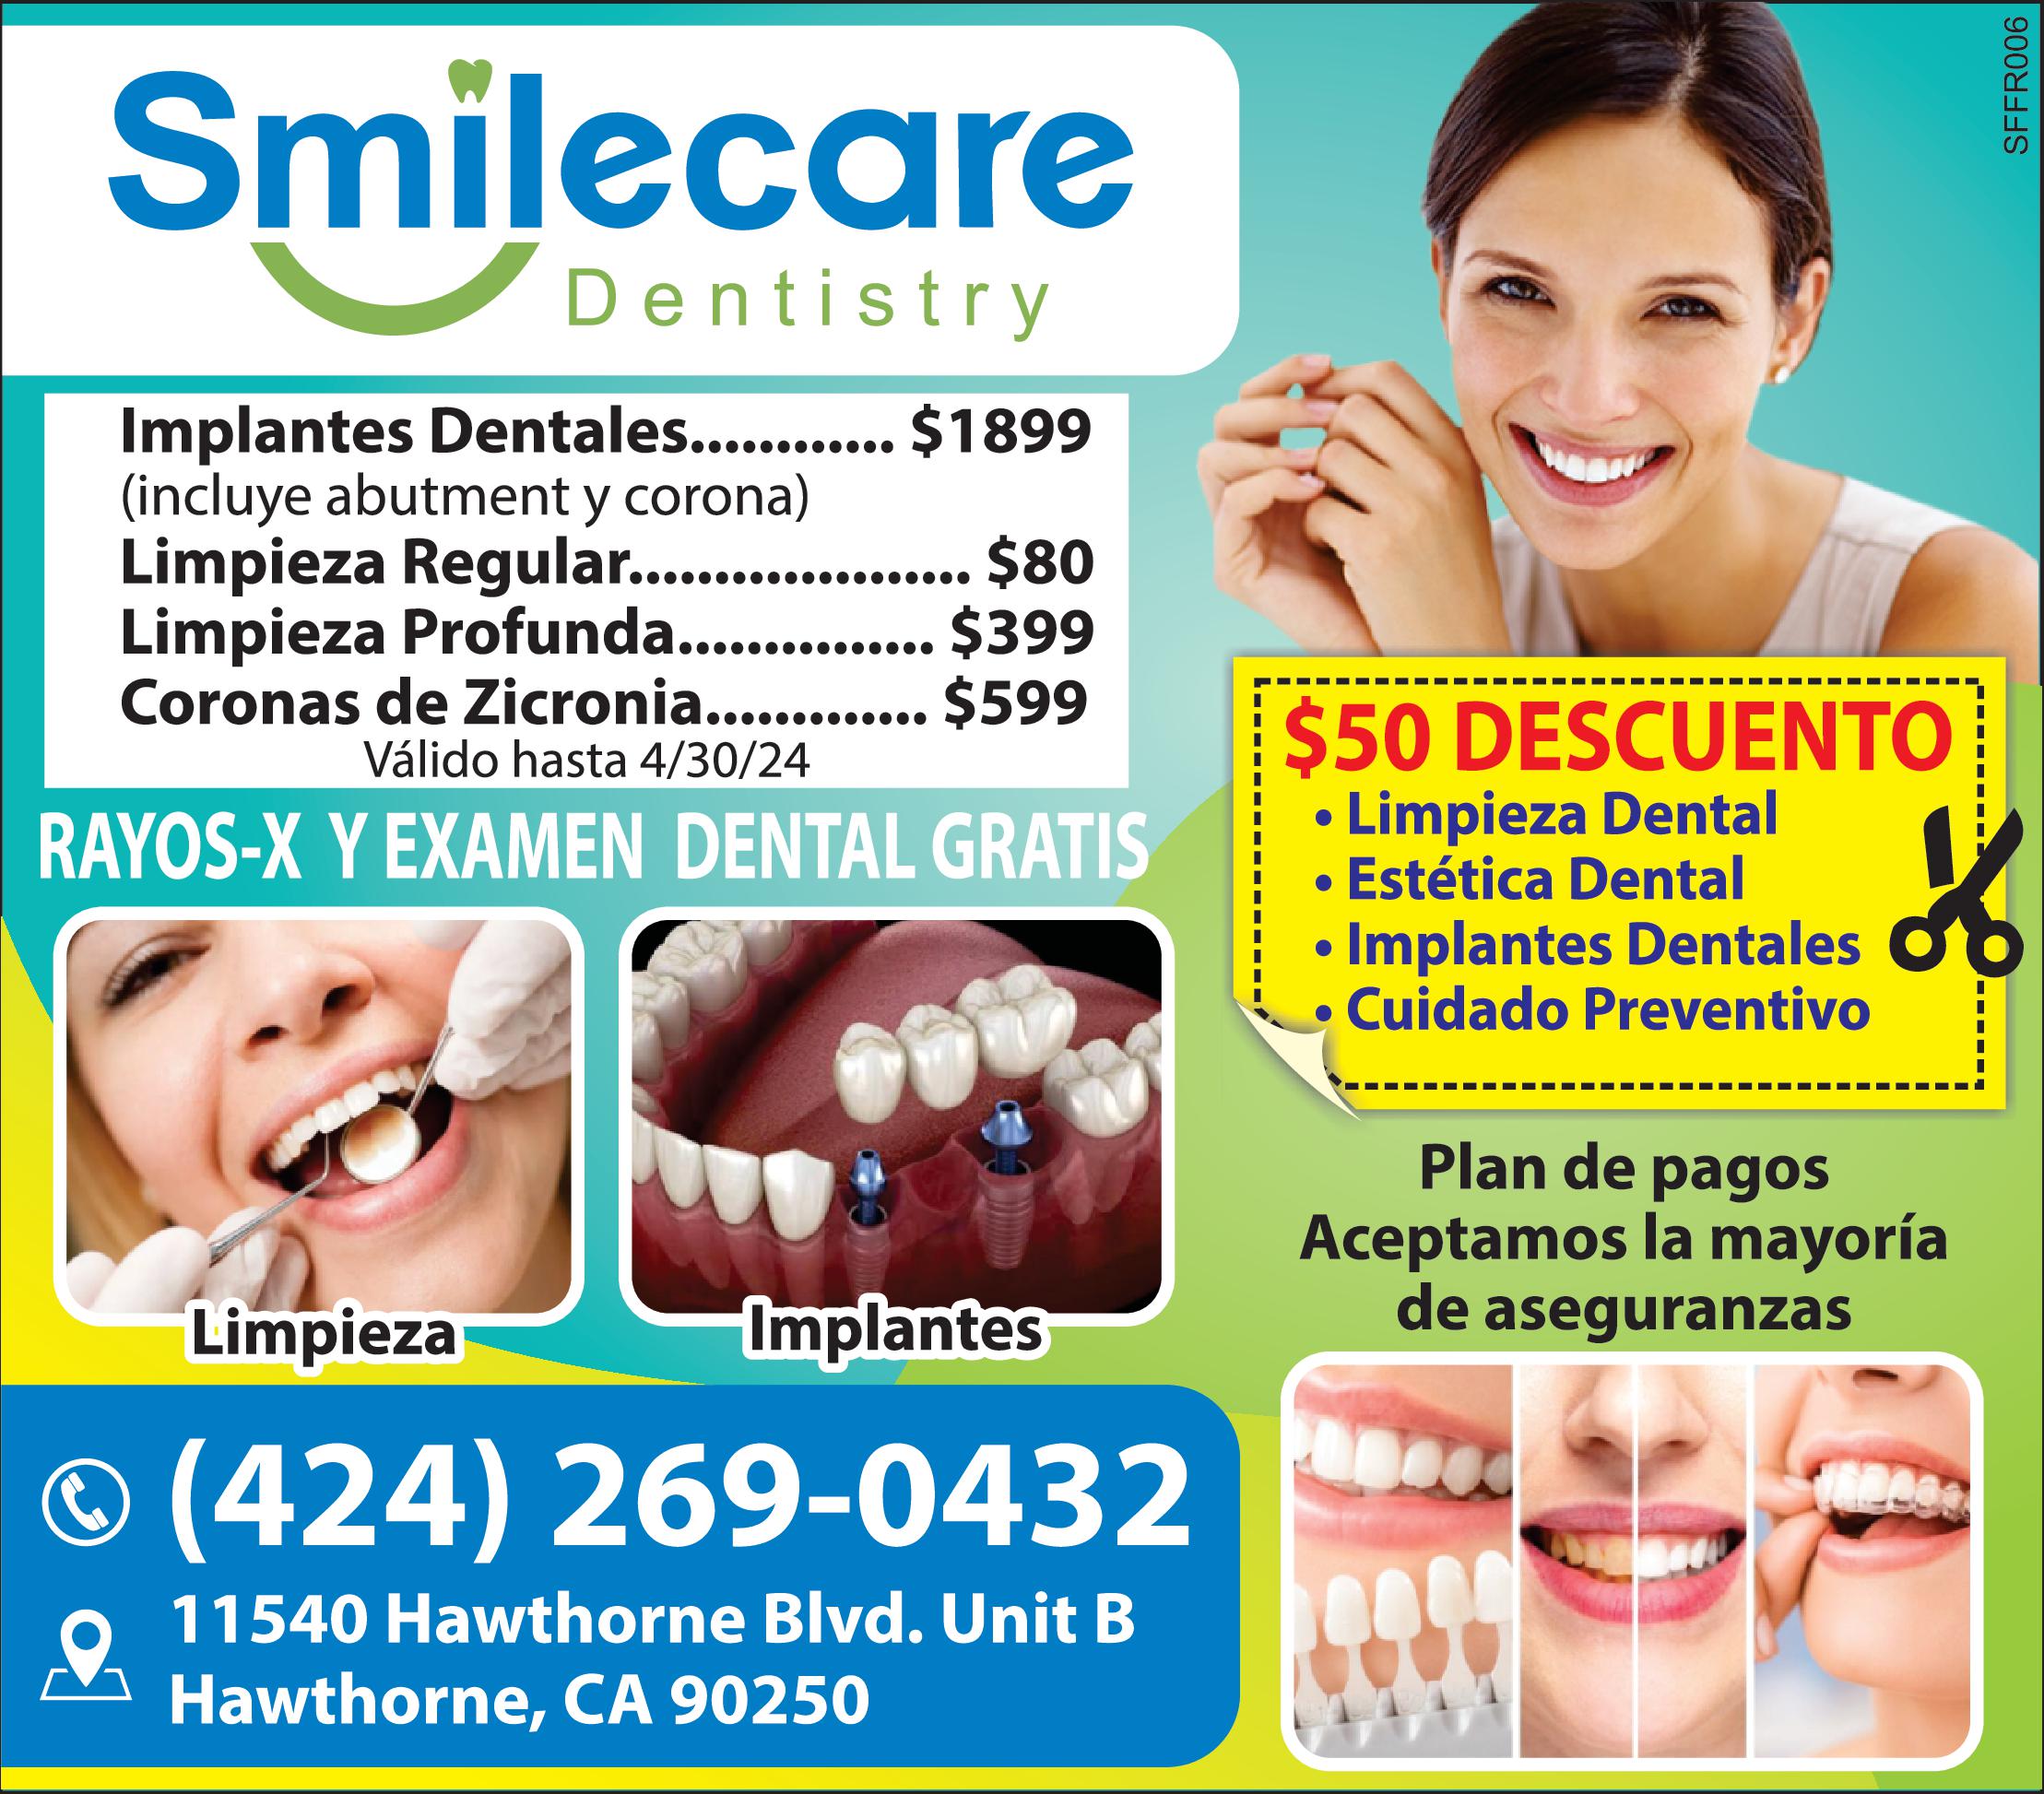 Smilecare Dentistry EXAMEN DENTAL GRATIS RAYOS Plan de pagos Aceptamos la mayoría de aseguranzas Limpieza Implantes 424 269-0432 11540 Hawthorne Blvd. Unit Hawthorne CA 90250 50 DESCUENTO Limpieza Dental Estética Dental Implantes Dentales Cuidado Preventivo 69800 SFFR006